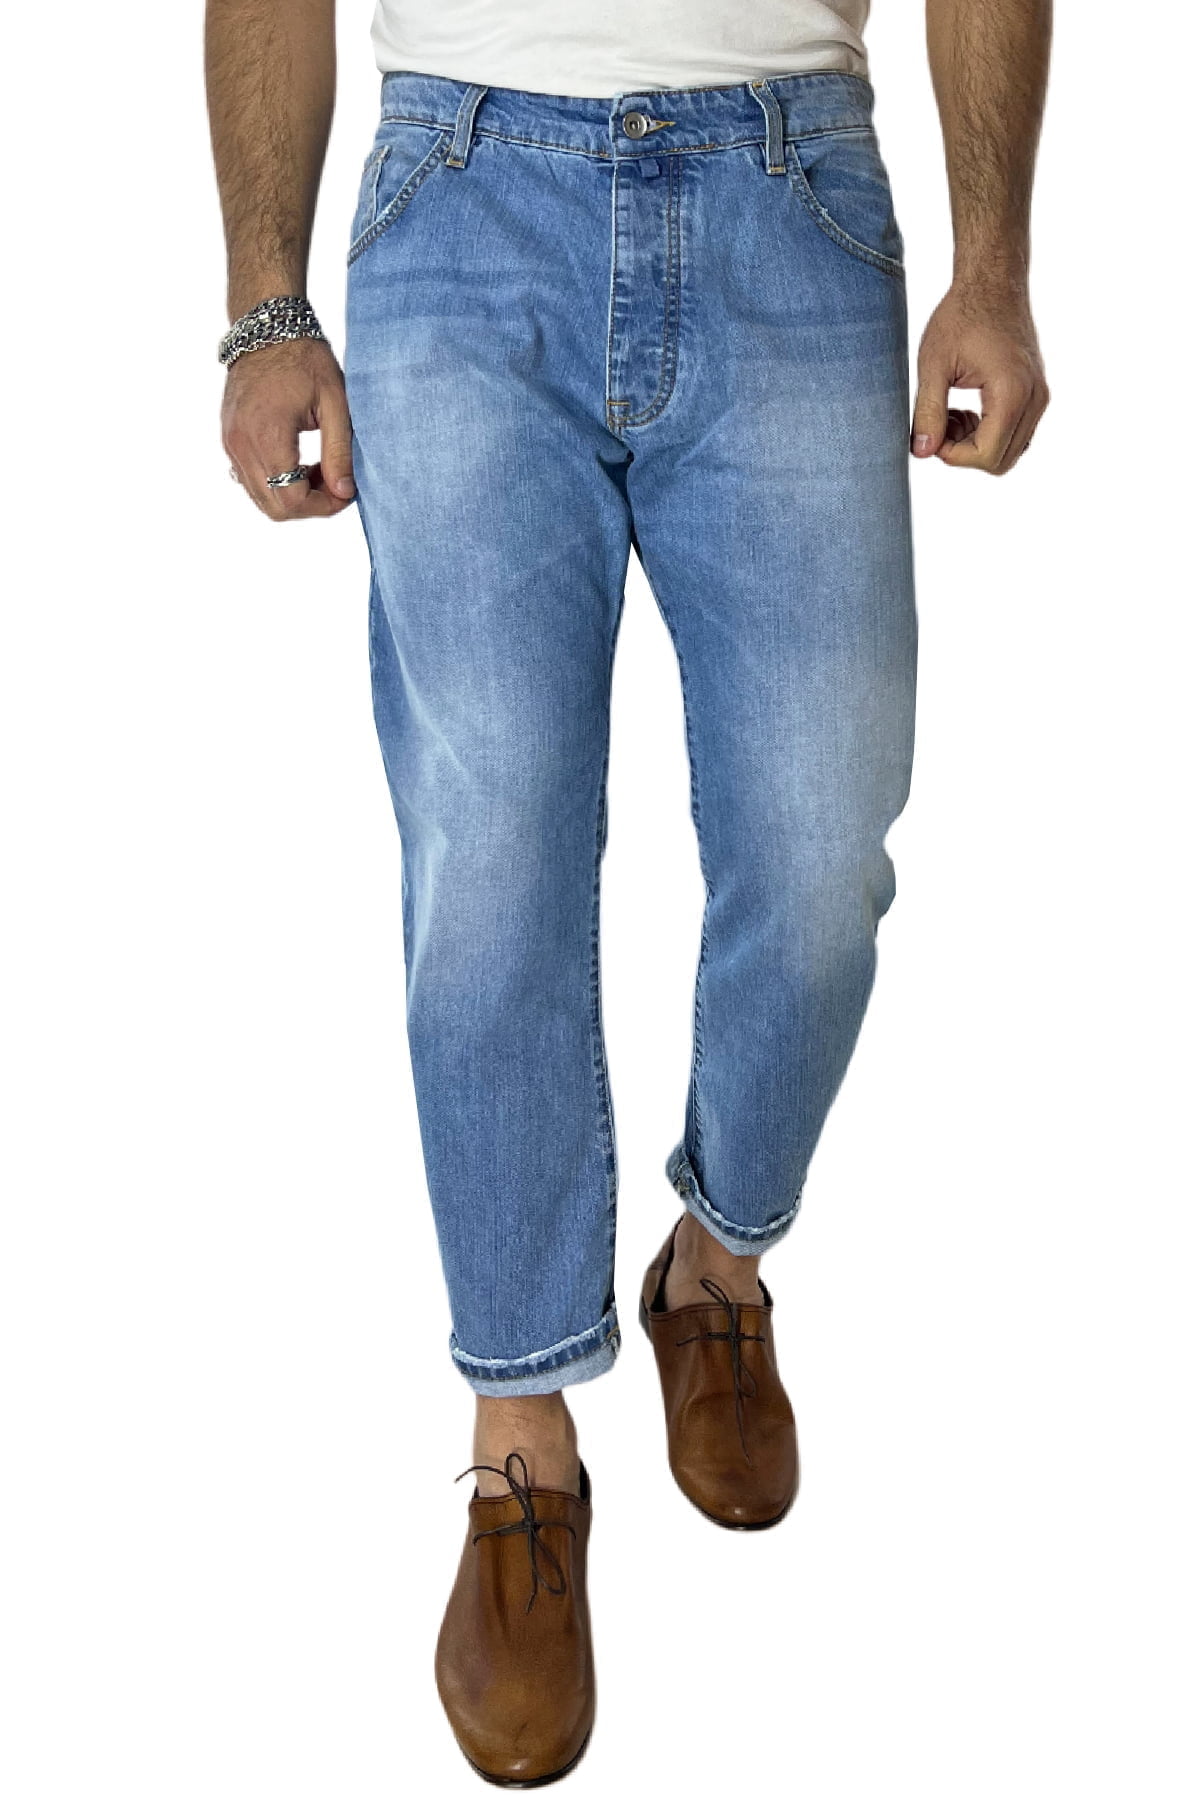 Jeans da uomo lavaggio chiaro modello 5 tasche regular fit made in italy